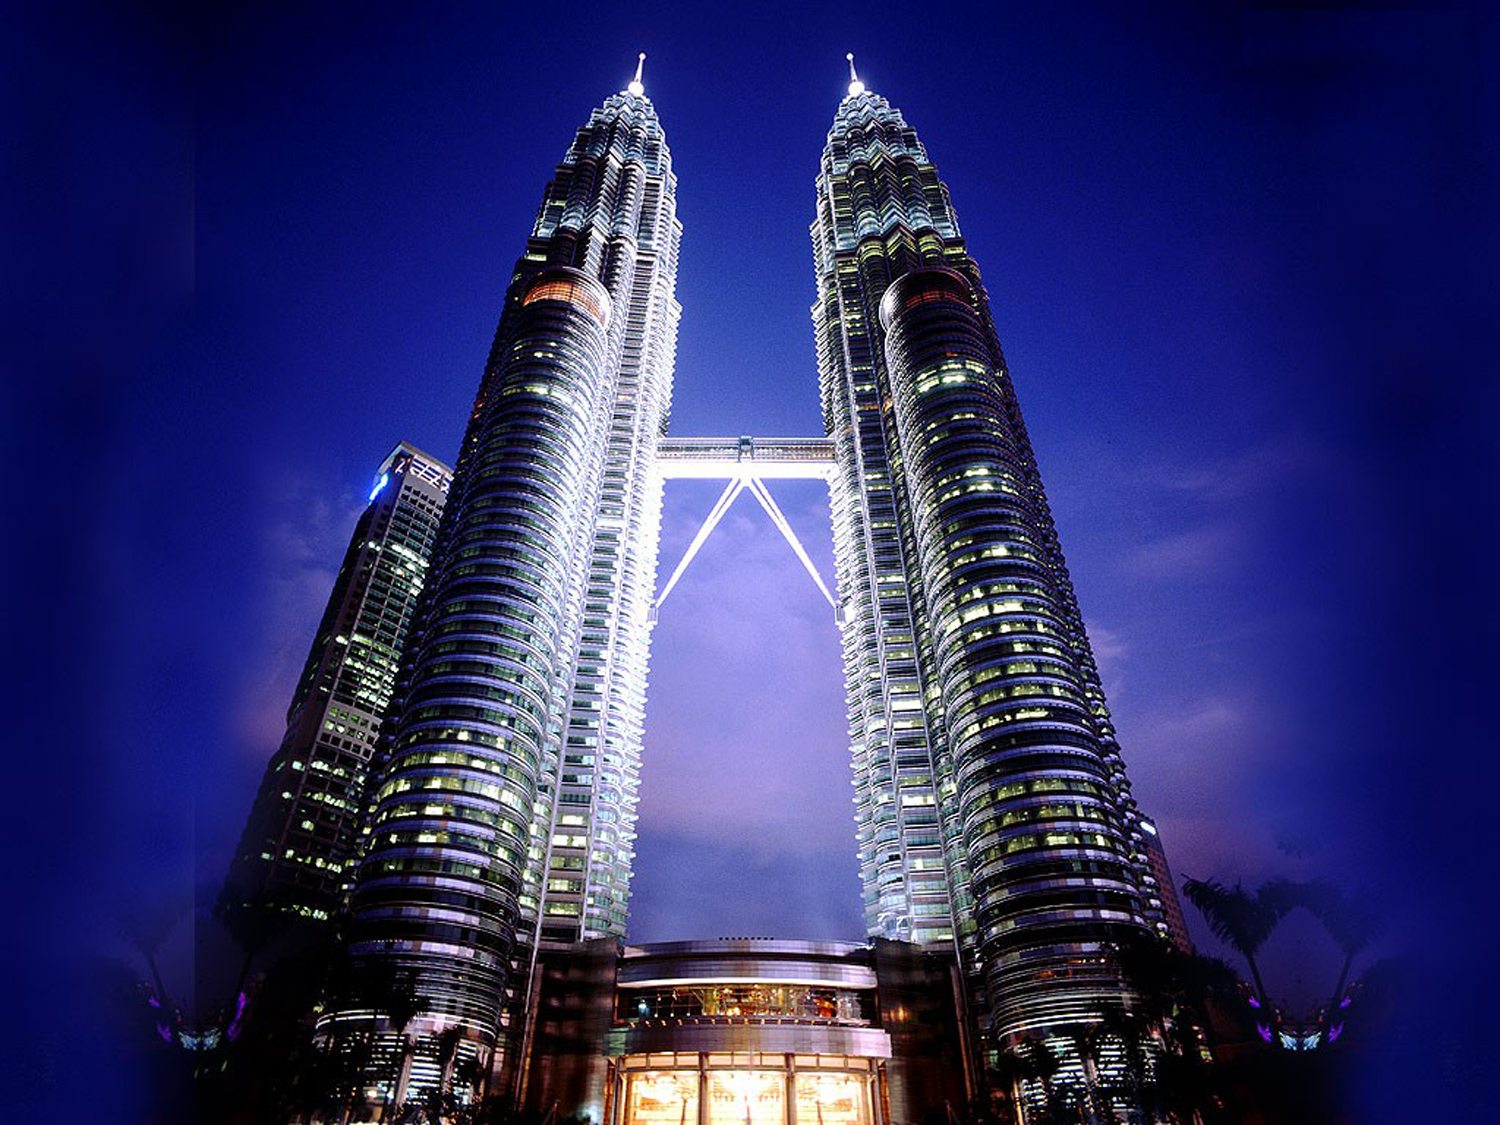 About Kuala Lumpur – ASEANFIC